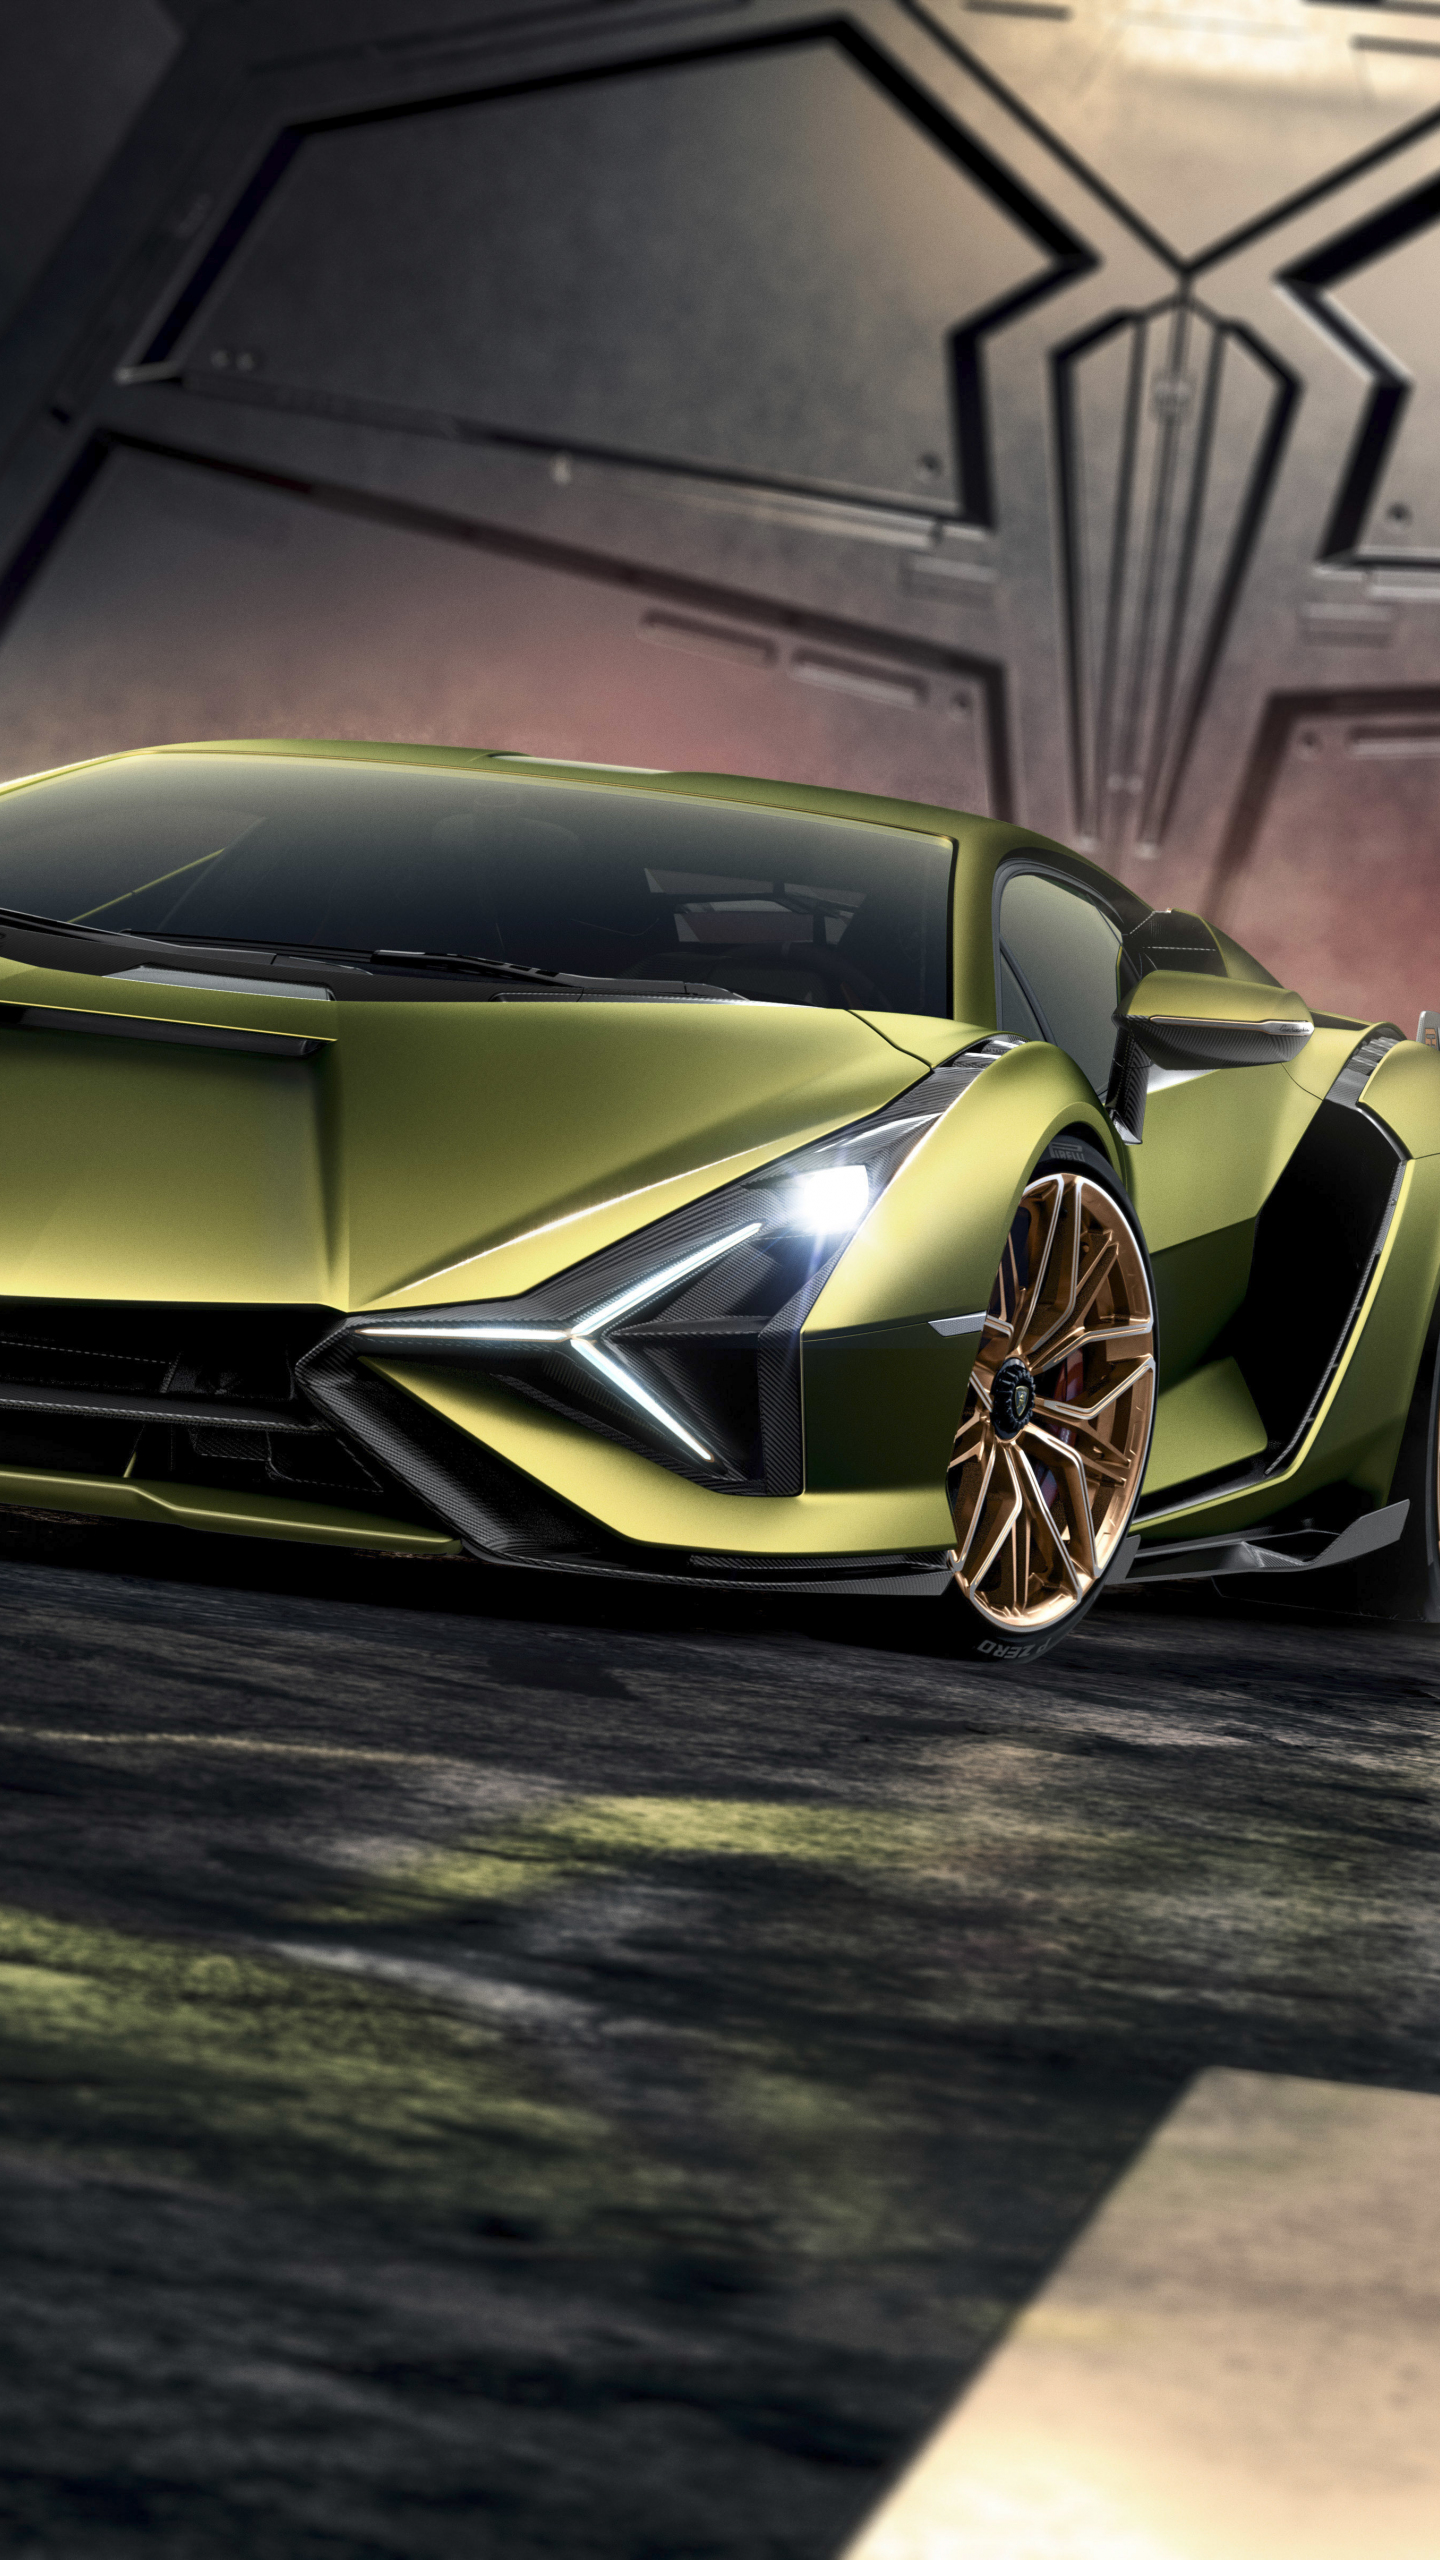 Wallpaper lamborghini siân - Lamborghini Sián là một trong những mẫu siêu xe sành điệu nhất hiện nay. Bộ sưu tập hình nền siêu xe Lamborghini Sián của chúng tôi sẽ khiến bạn chú ý ngay từ cái nhìn đầu tiên. Hãy đến với chúng tôi để tận hưởng cảm giác đắm say với hình nền Lamborghini Sián độc đáo này.